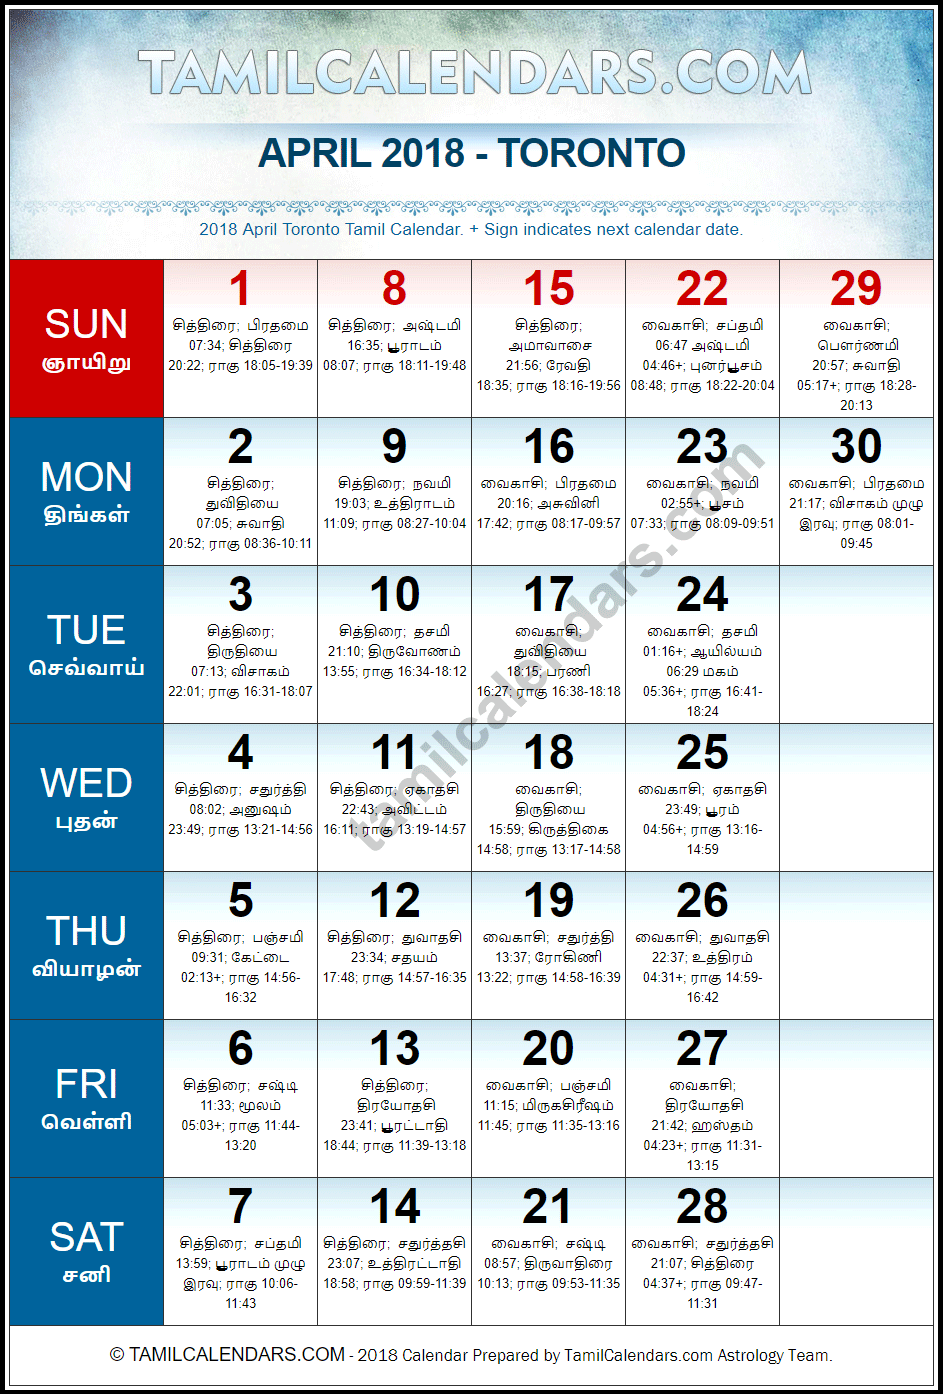 April 2018 Tamil Calendar for Toronto, Canada